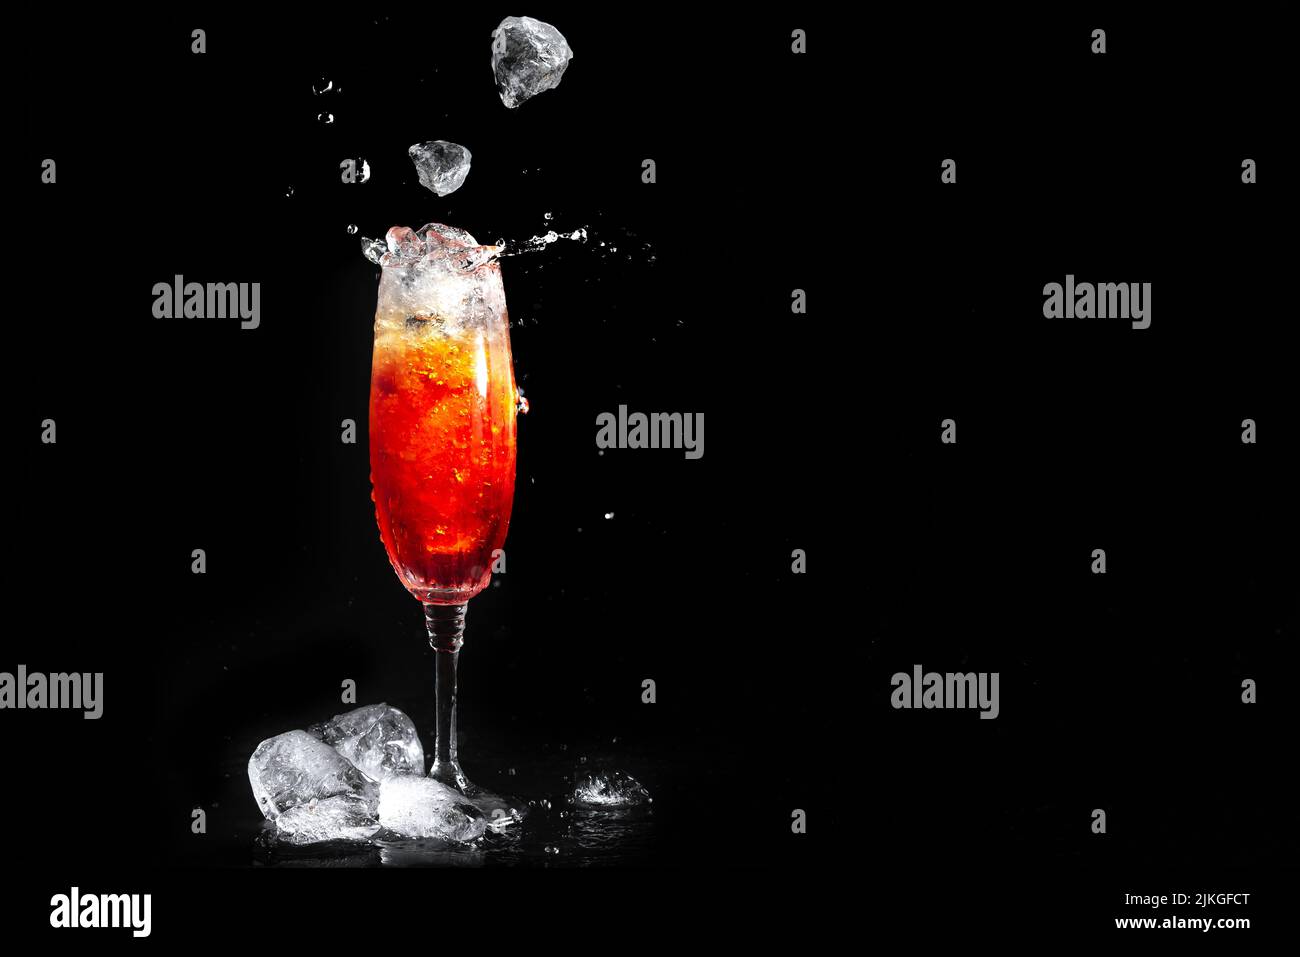 Vetro con cocktail Aperol su sfondo nero. Il ghiaccio cade nel bicchiere con la bevanda alcolica. Un tuffo di cocktail aperol. Drink estivo. Foto Stock